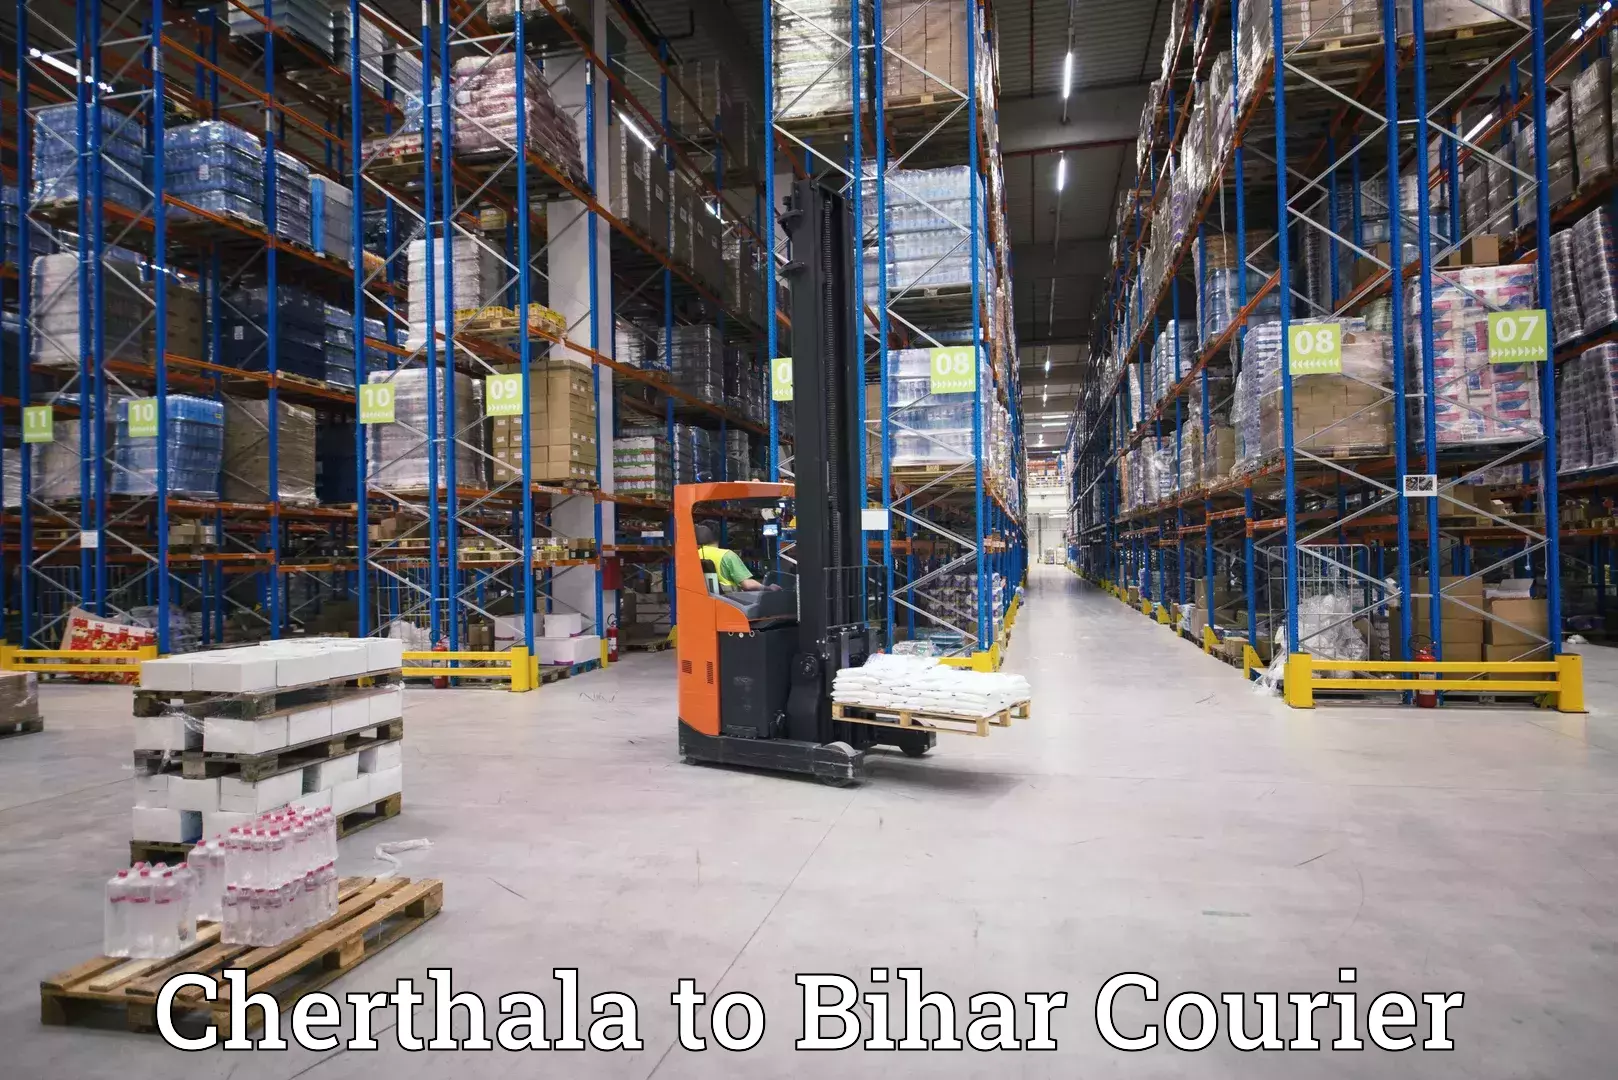 Nationwide delivery network Cherthala to Aurangabad Bihar